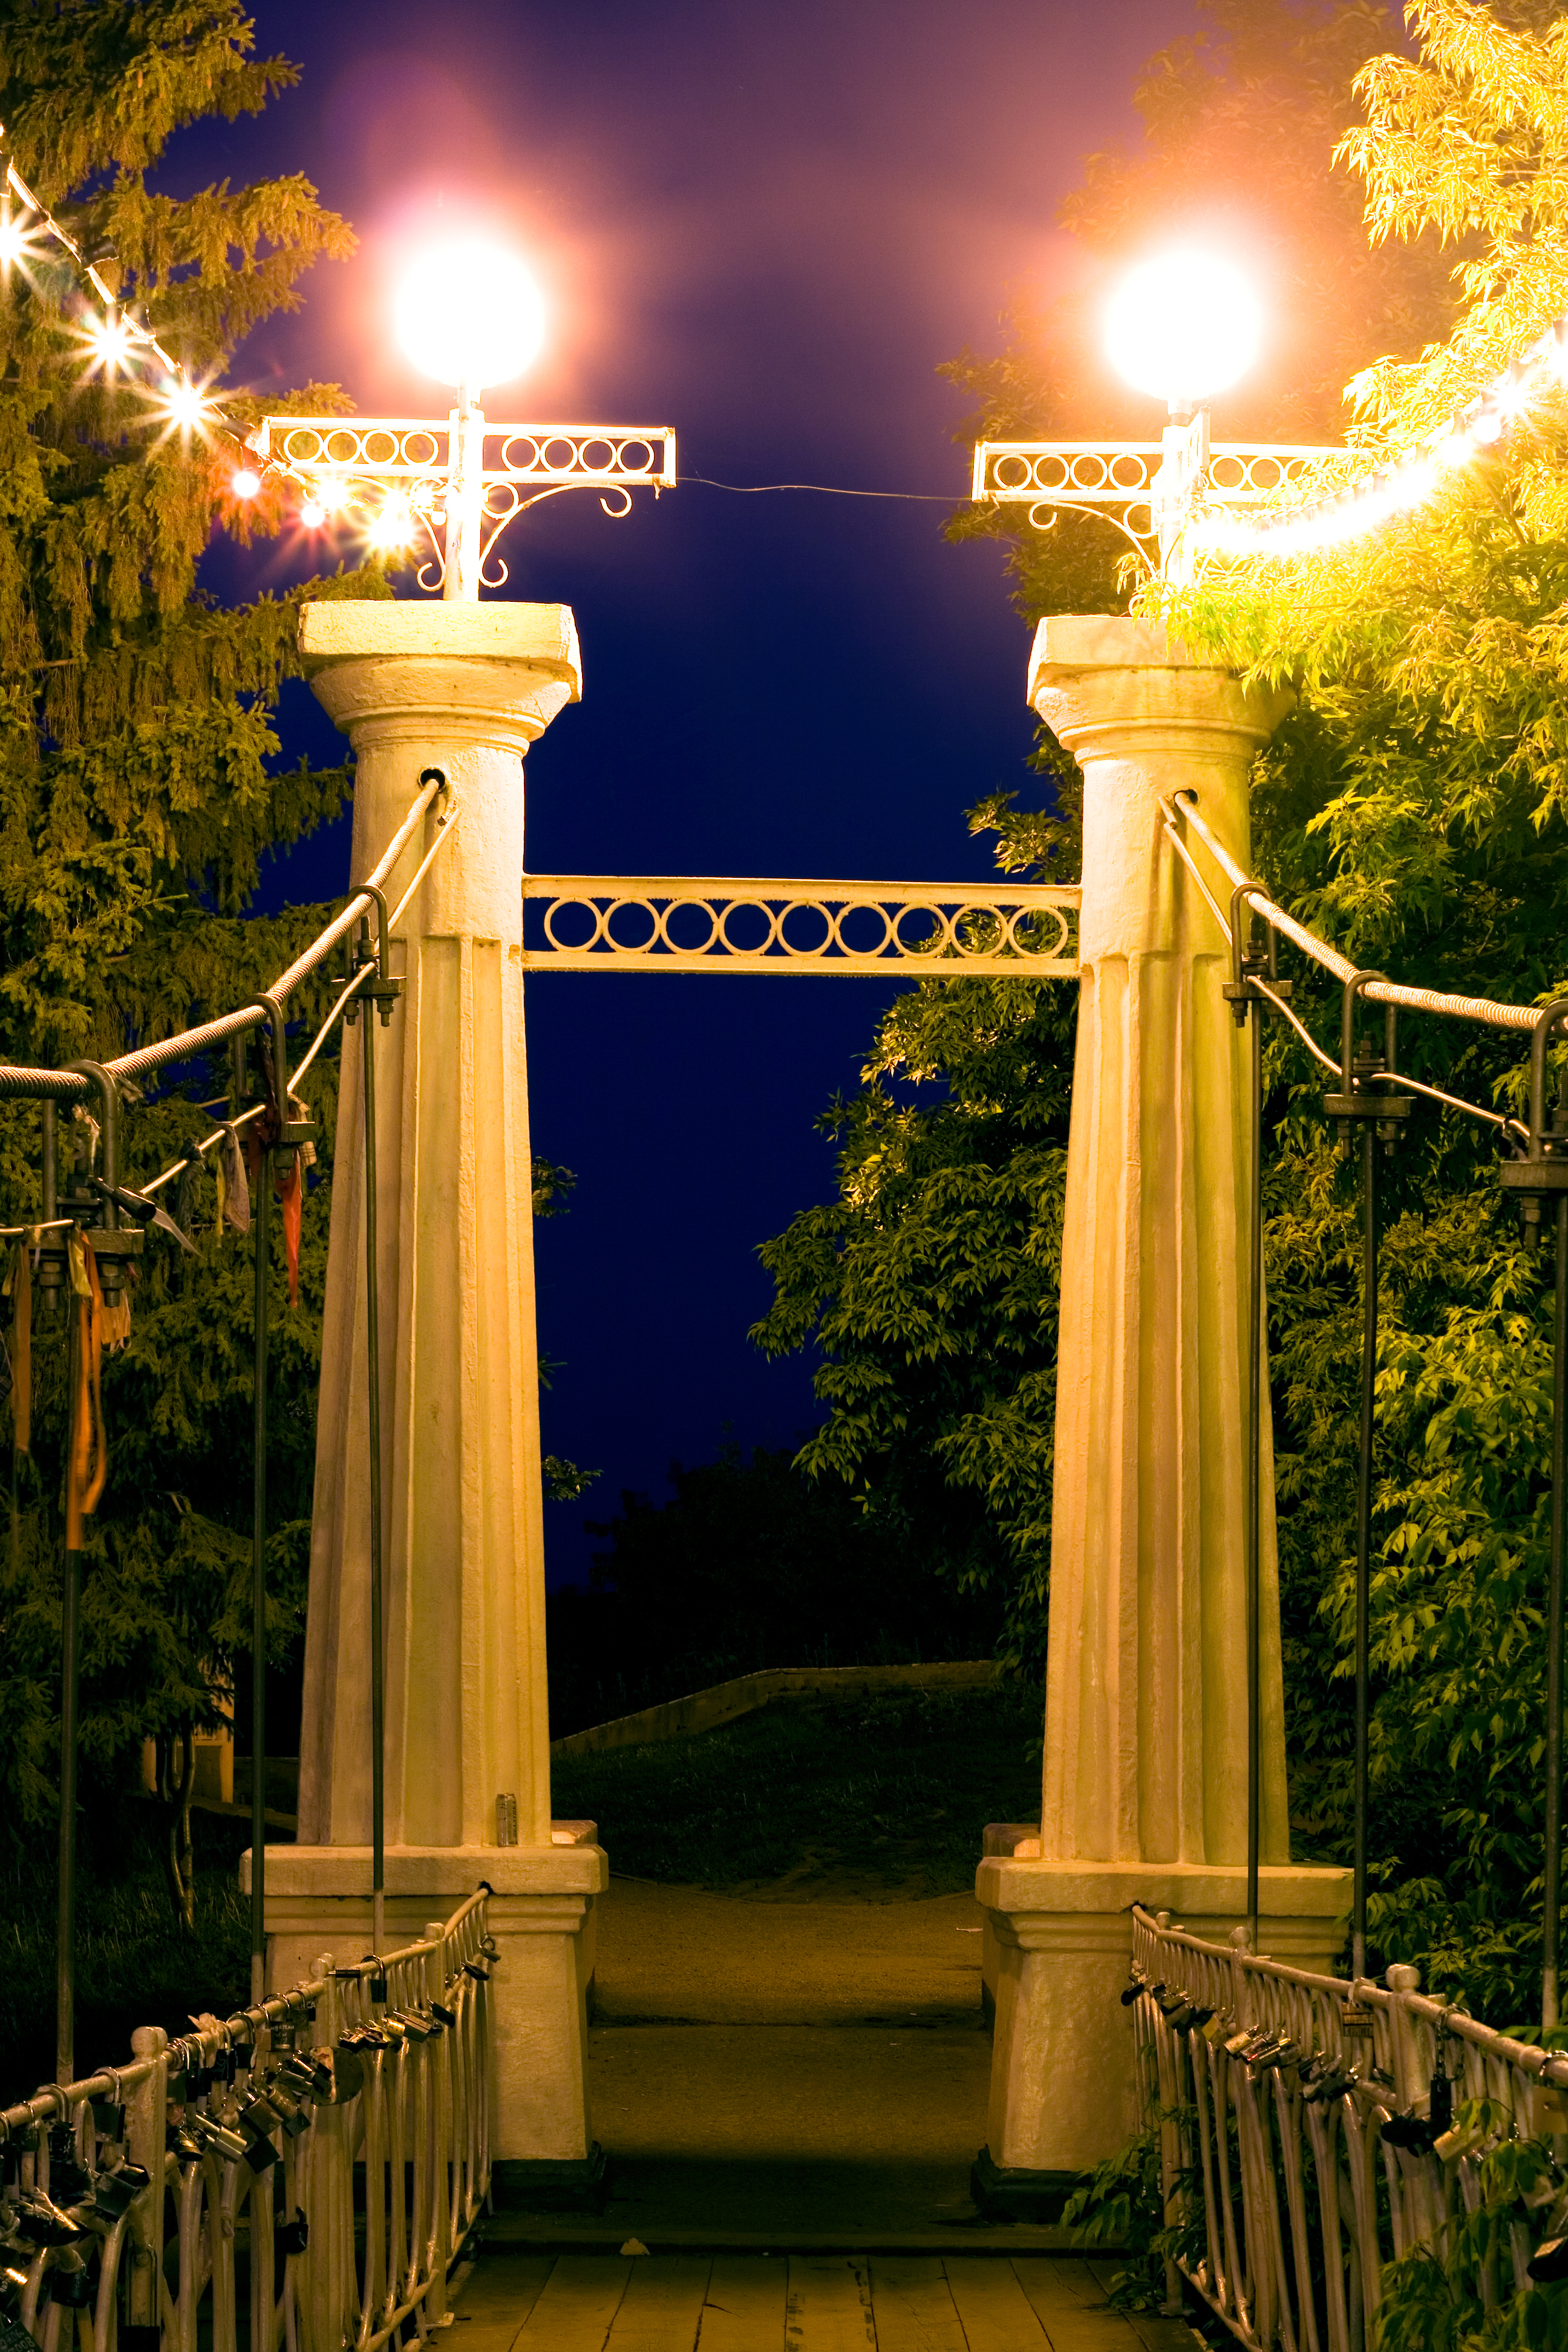 Иллюминация на Столбах. Ретро столбы. Динамические столбы в парке. Уличный мост. Park scene